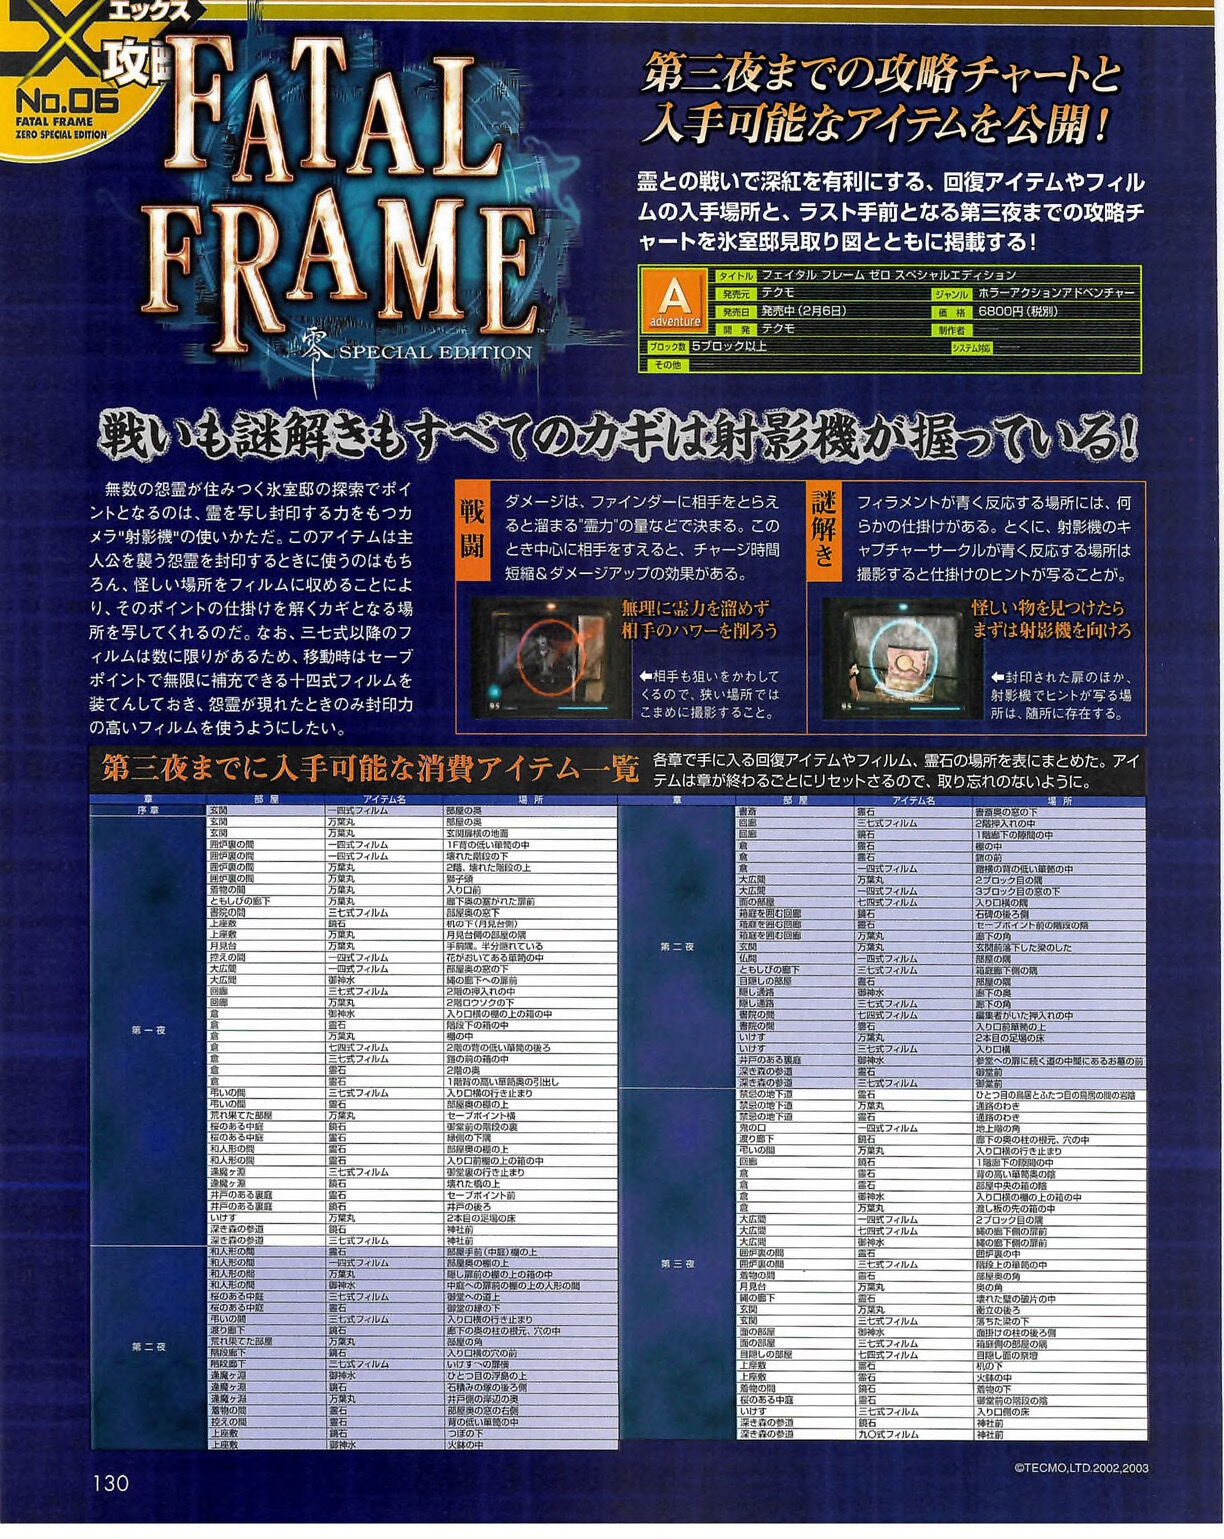 Famitsu_Xbox_2003-04_jp2 129